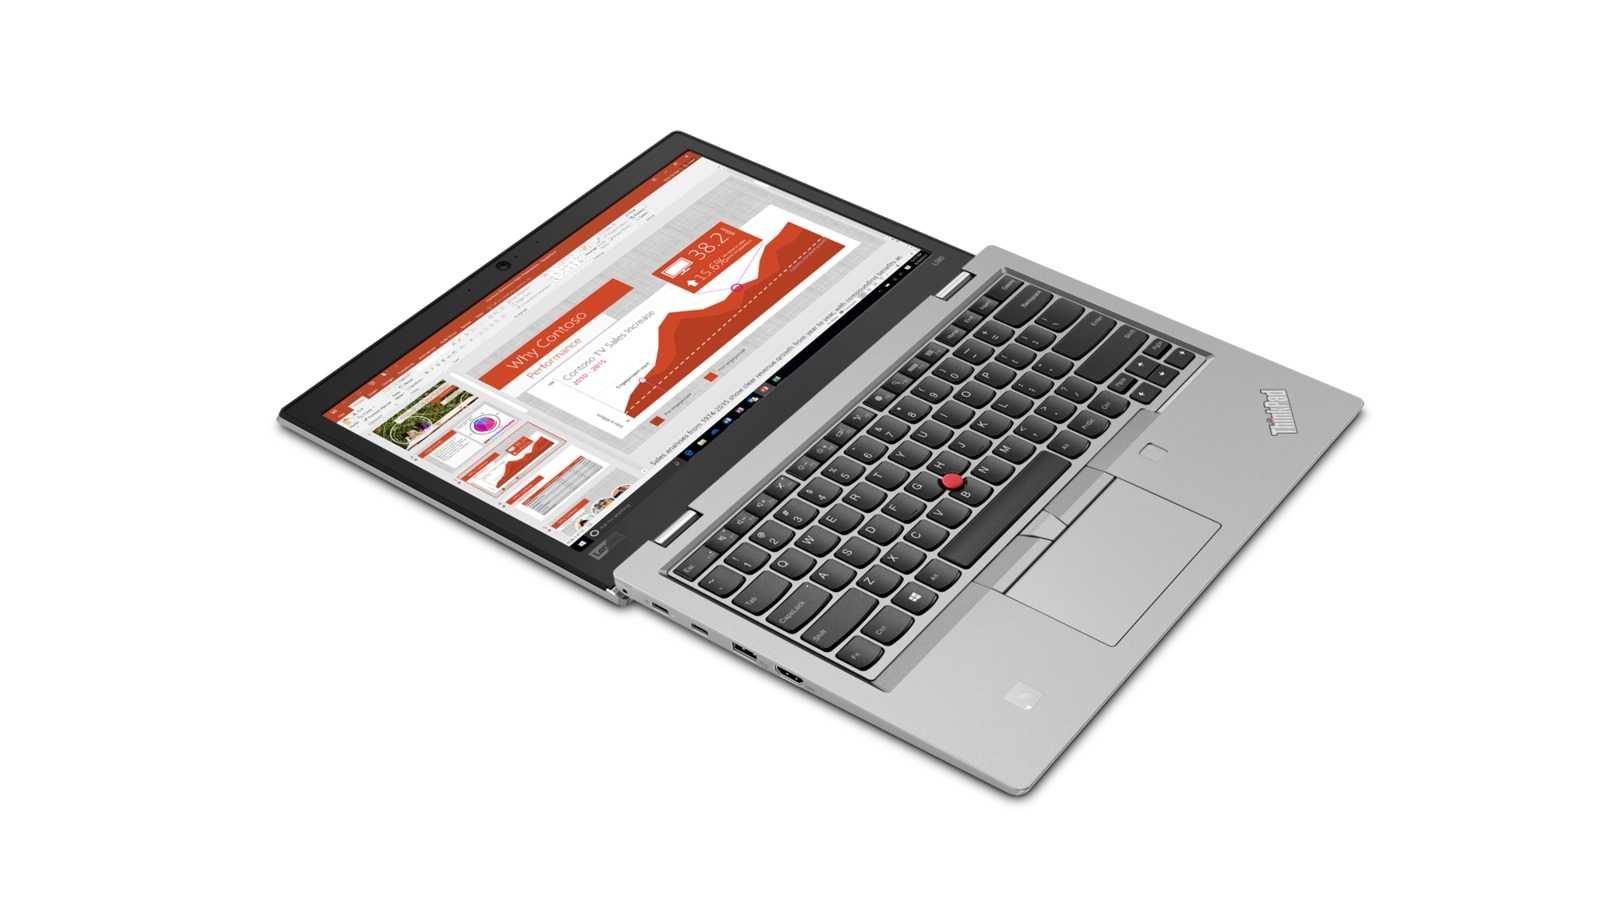 Ноутбук Lenovo ThinkPad L380 - подробные характеристики обзоры видео фото Цены в интернет-магазинах где можно купить ноутбук Lenovo ThinkPad L380